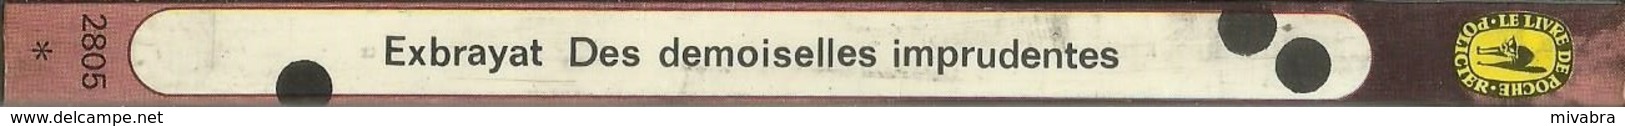 DES DEMOISELLES IMPRUDENTES - EXBRAYAT - LE LIVRE DE POCHE POLICIER N° 2805 - 1977 - Champs-Elysées